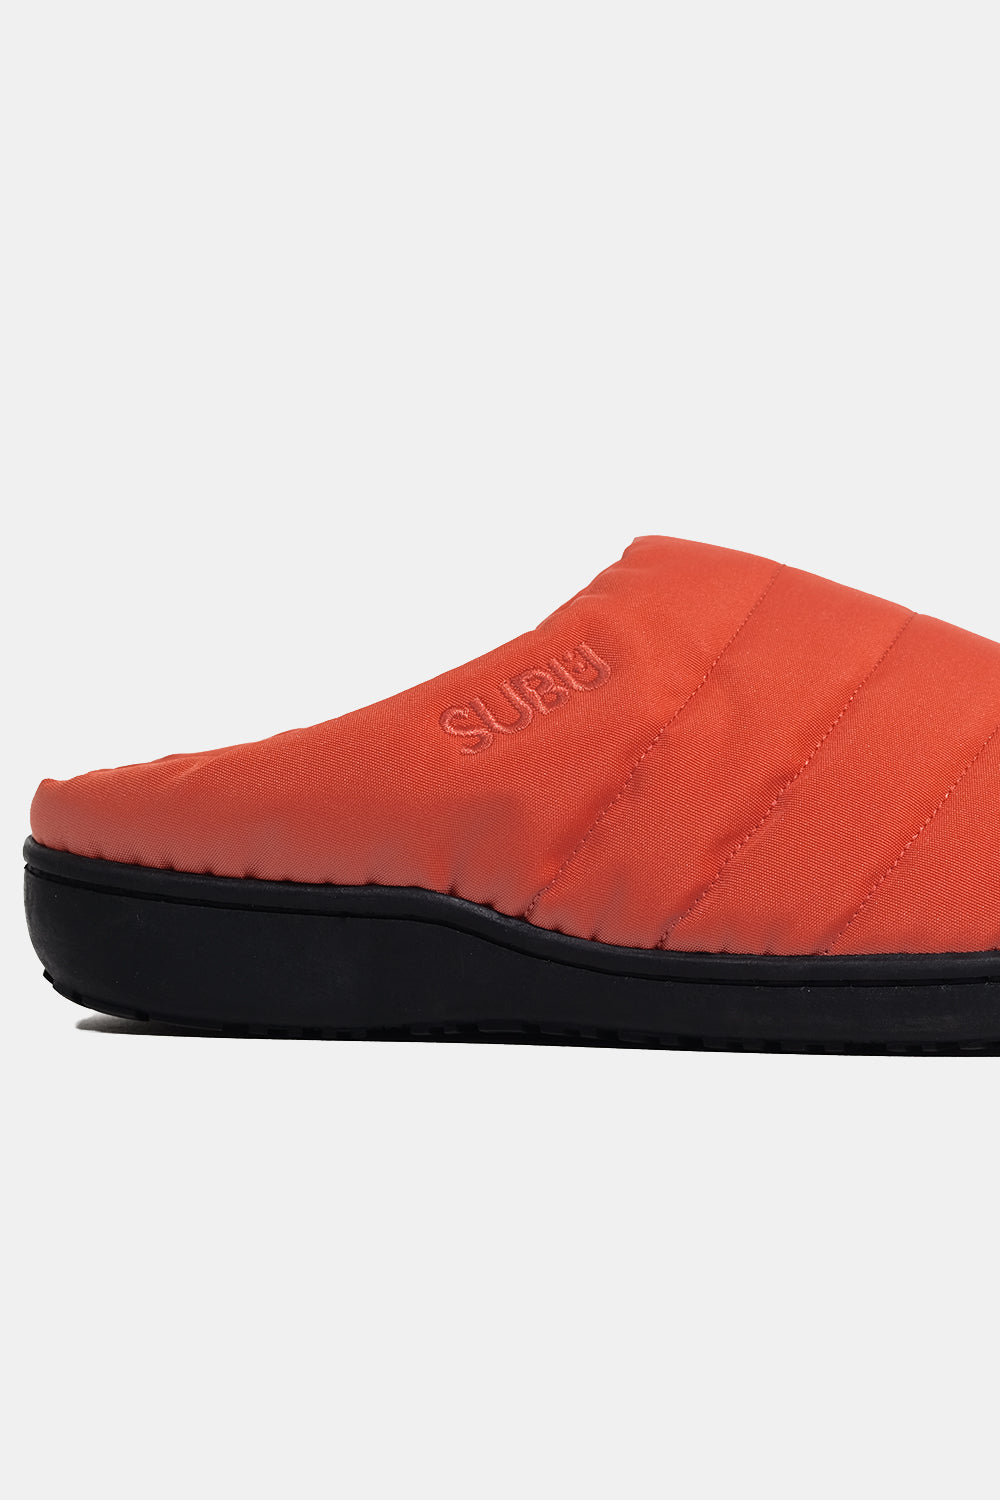 SUBU Indoor Outdoor Nannen Slippers (Orange)